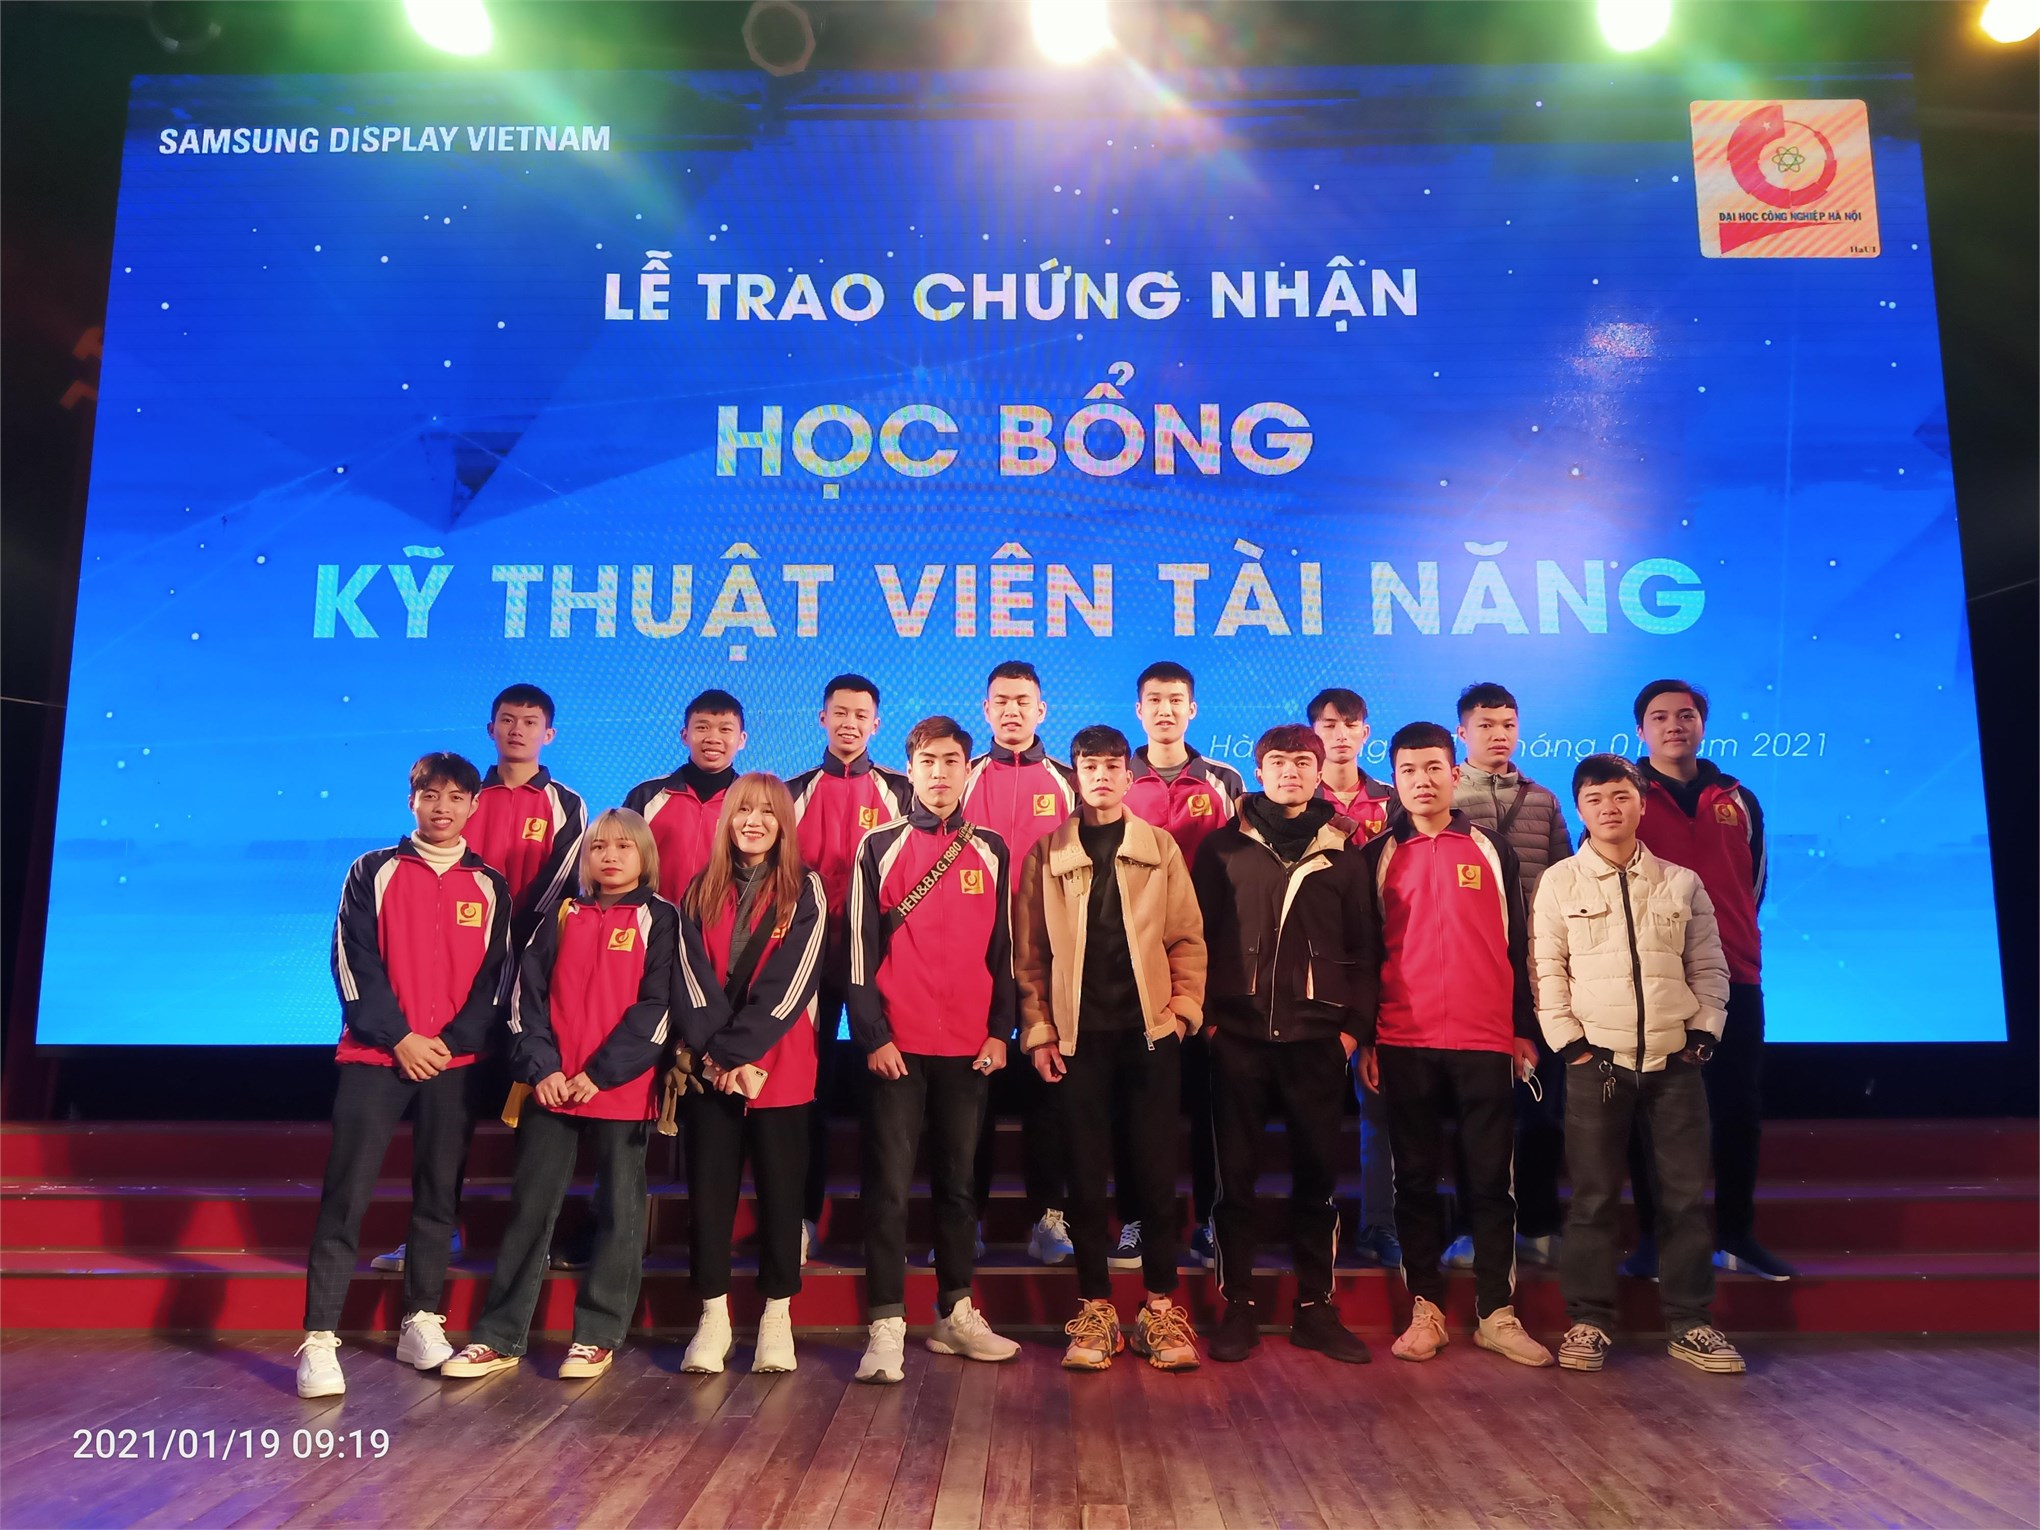 21 sinh viên Trung tâm Việt Nhật được nhận học bổng Kỹ thuật viên tài năng của công ty Samsung Display Việt Nam (SDV)